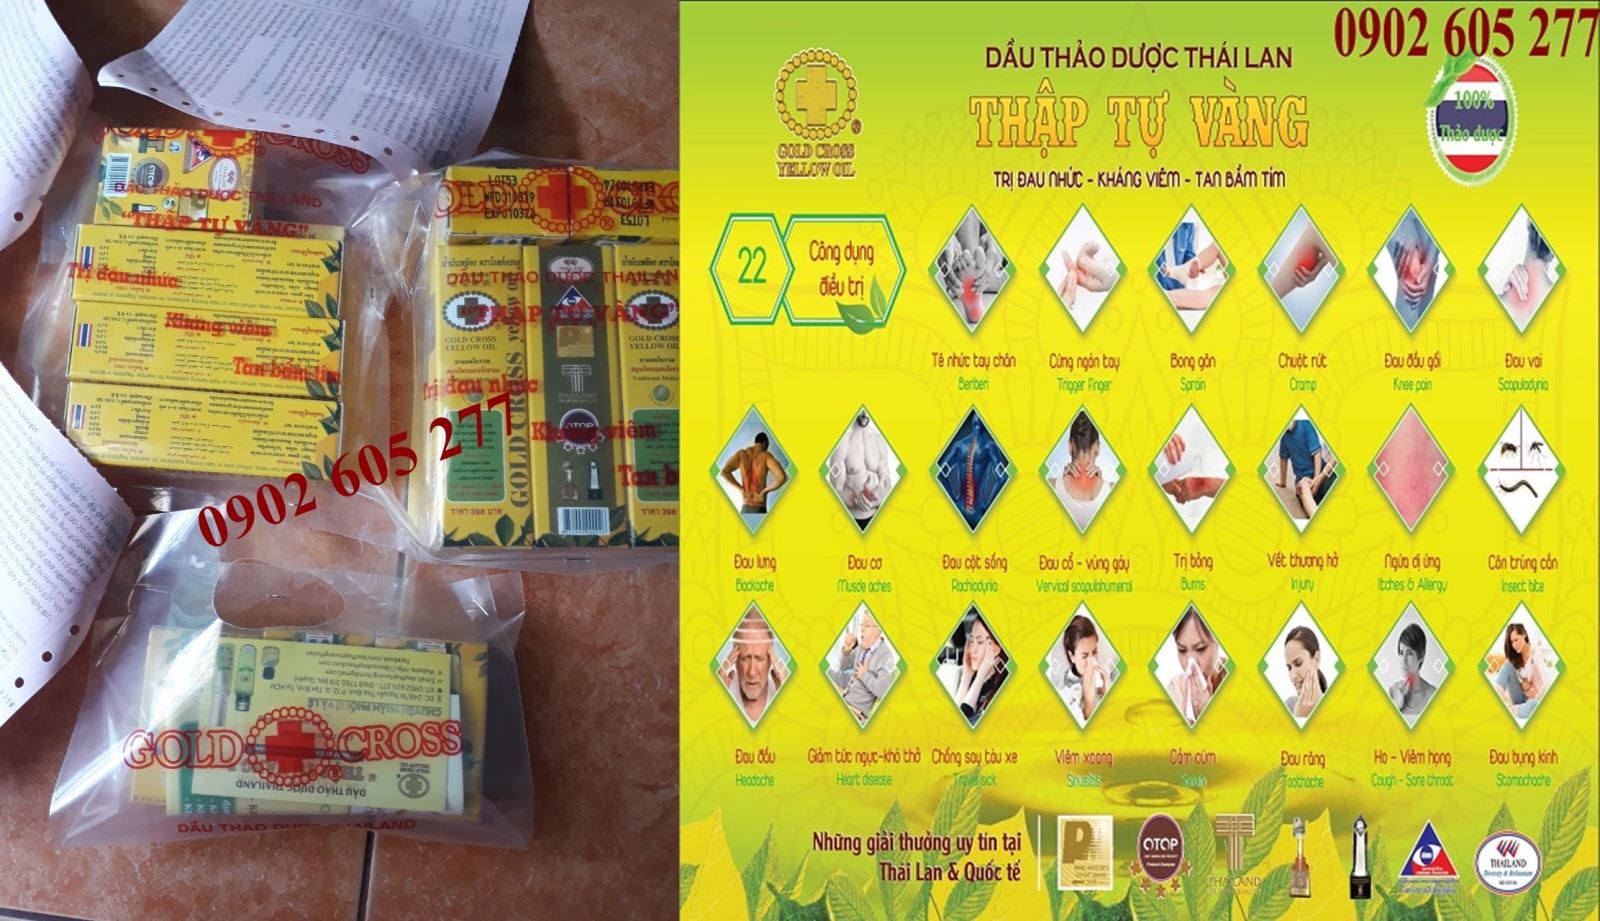 Cung cấp Dầu xoa bóp thảo dược Thập tự vàng Thái Lan tại Điện Biên